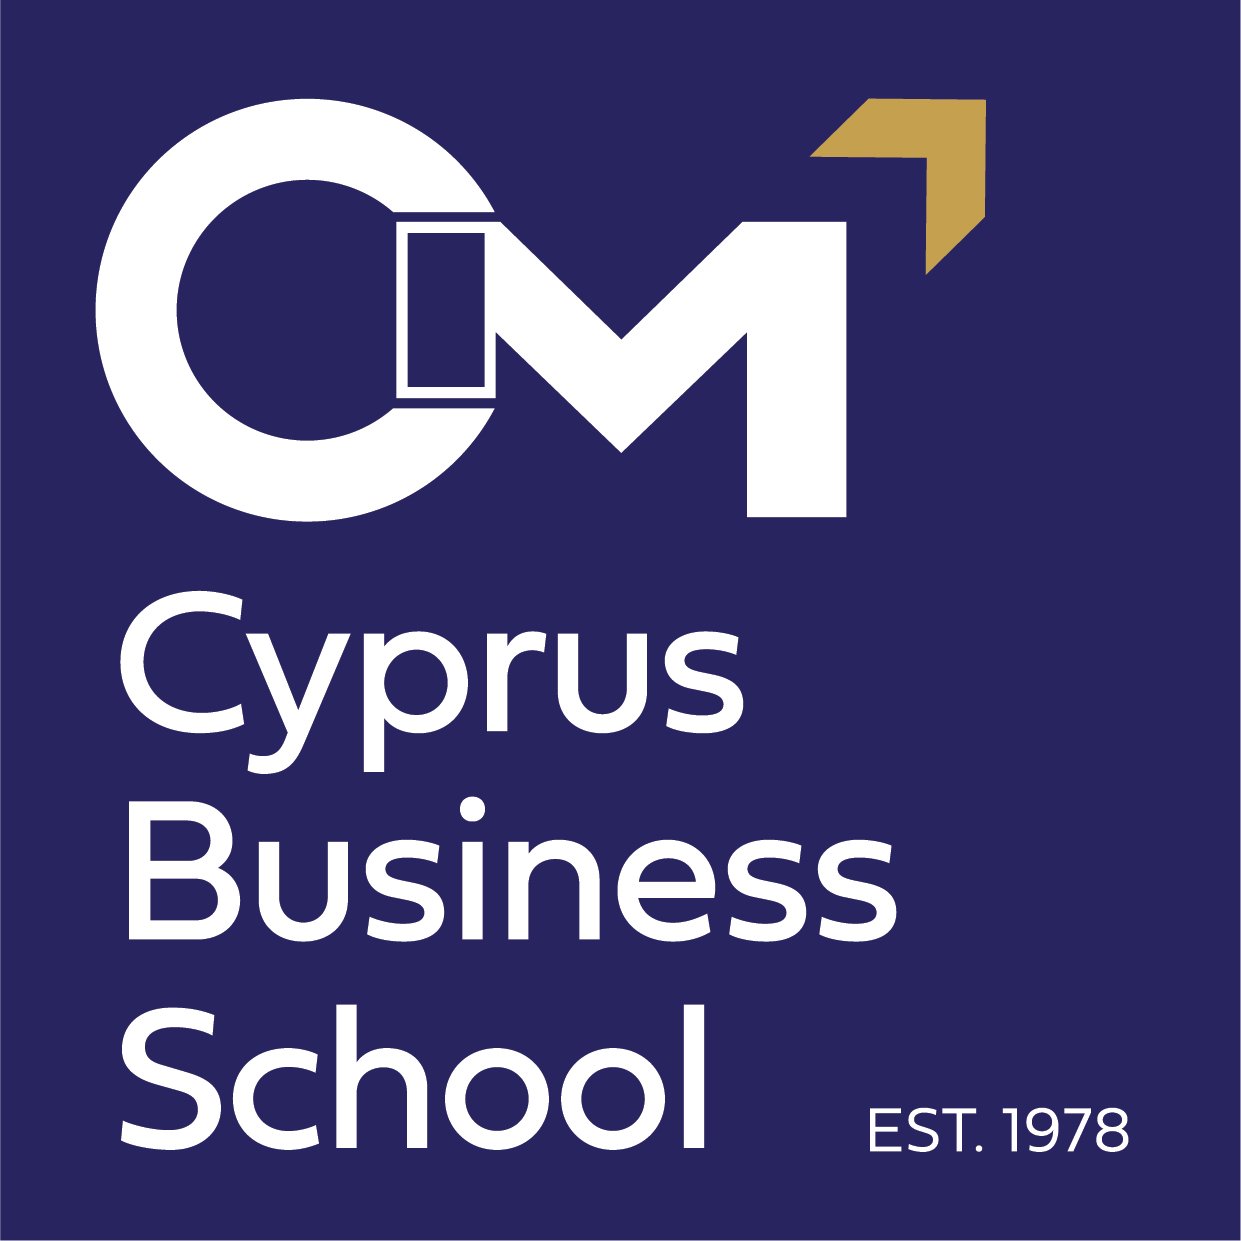 CIM Logo Vertical.jpg